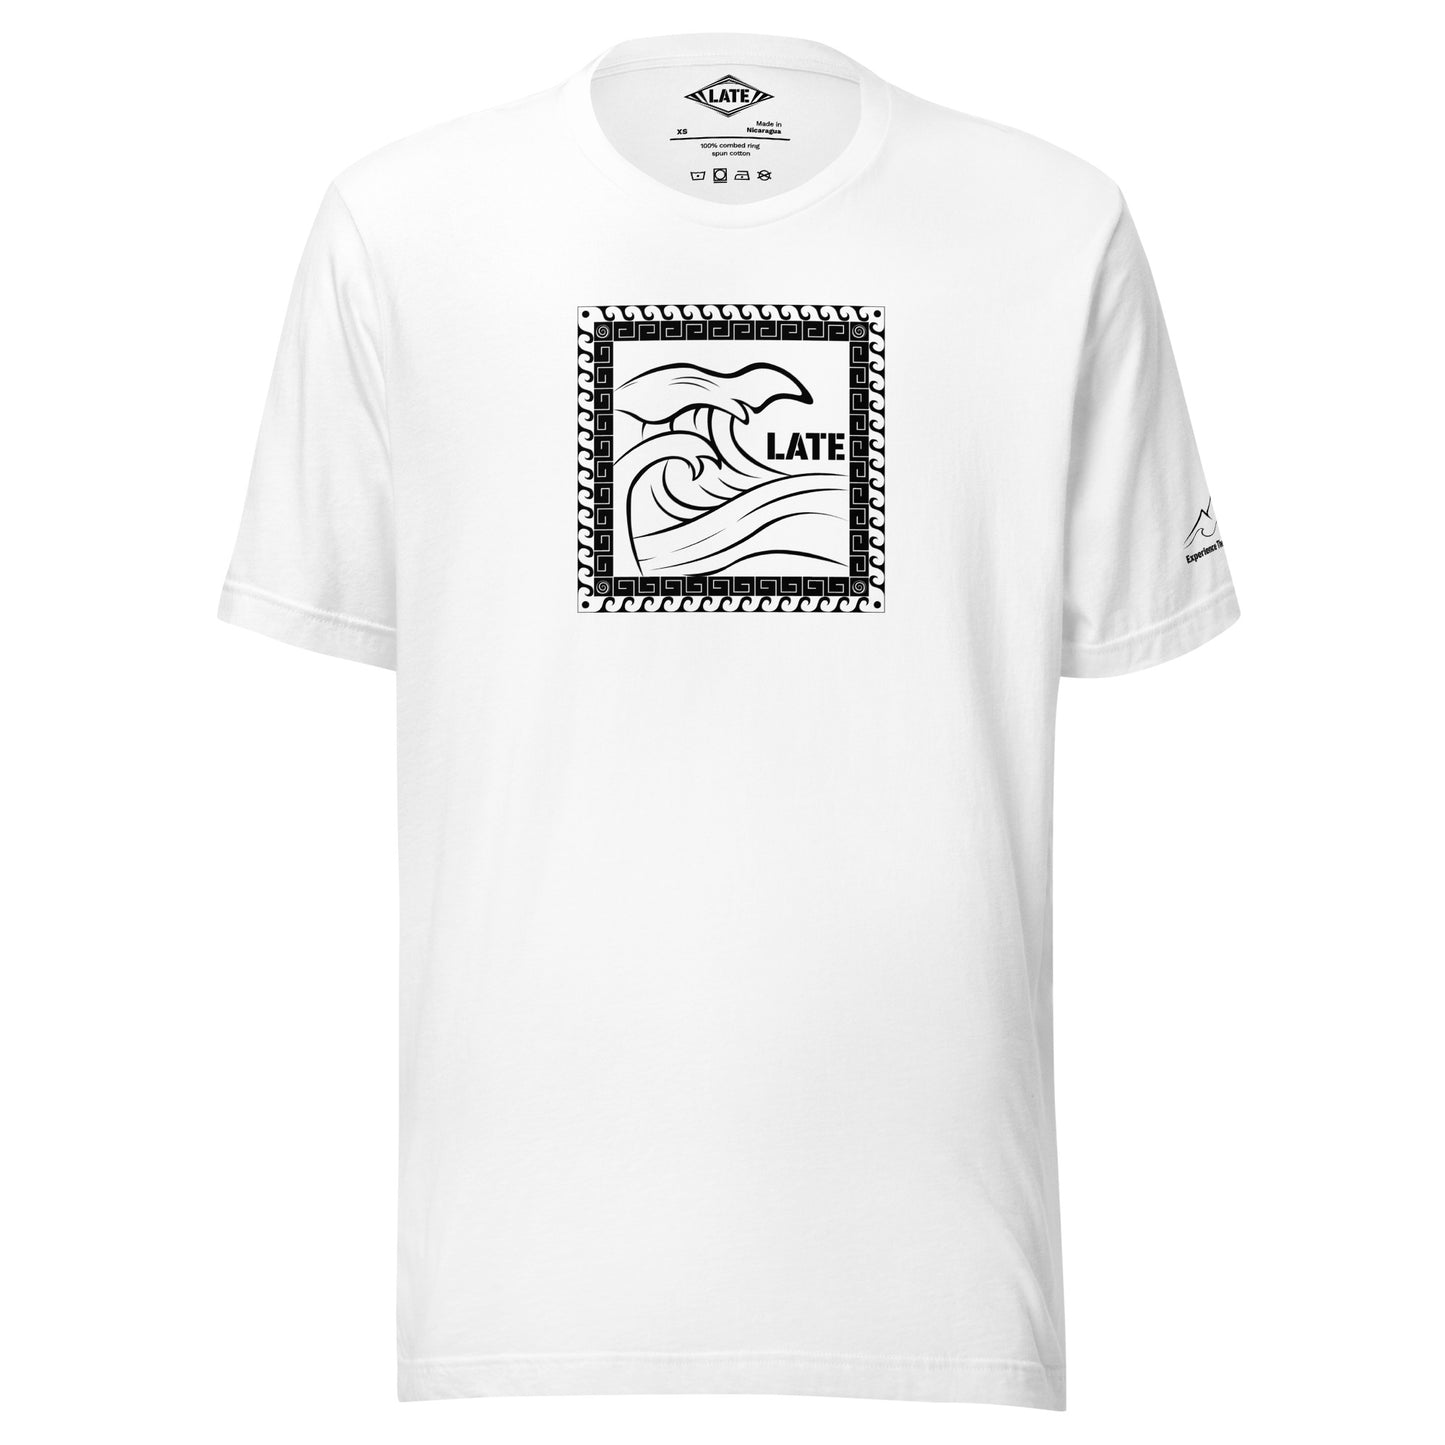 T-Shirt Tricky Wave design vague japonnaise et contour maori texte Late marque de vetement de surf. Tshirt unisex couleur blanc